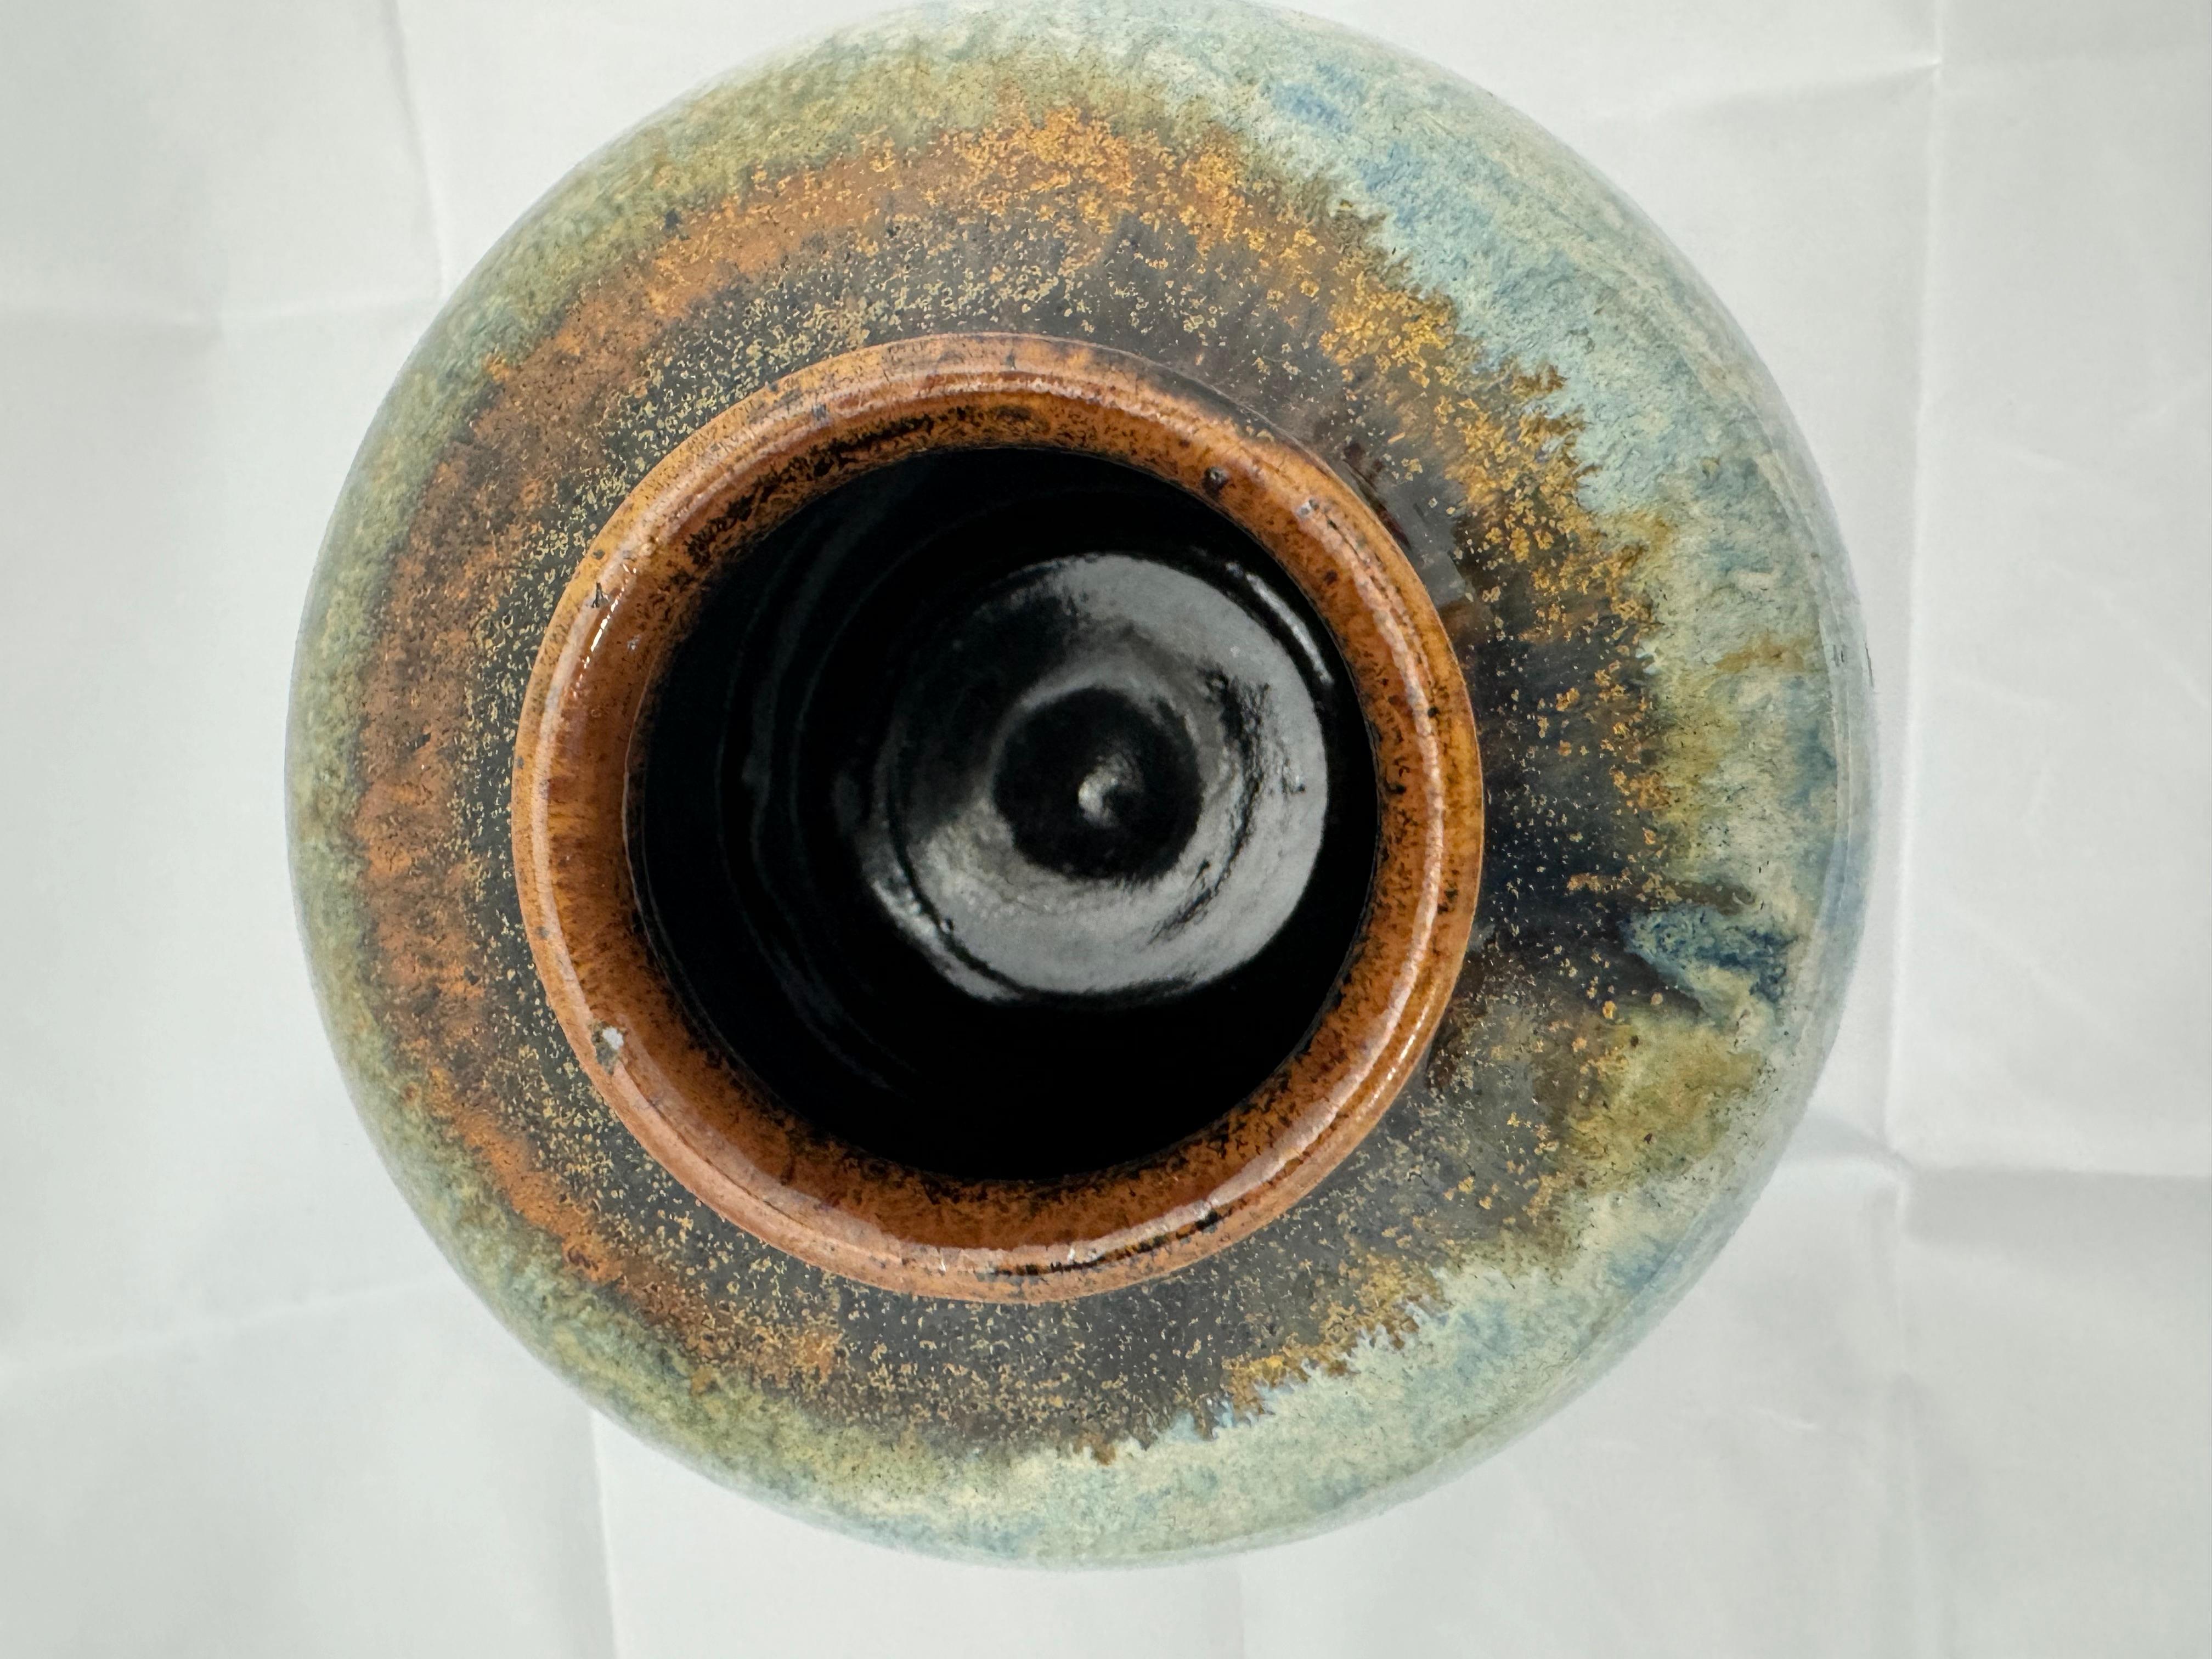 Joli vase en poterie fortement émaillée pour votre collection